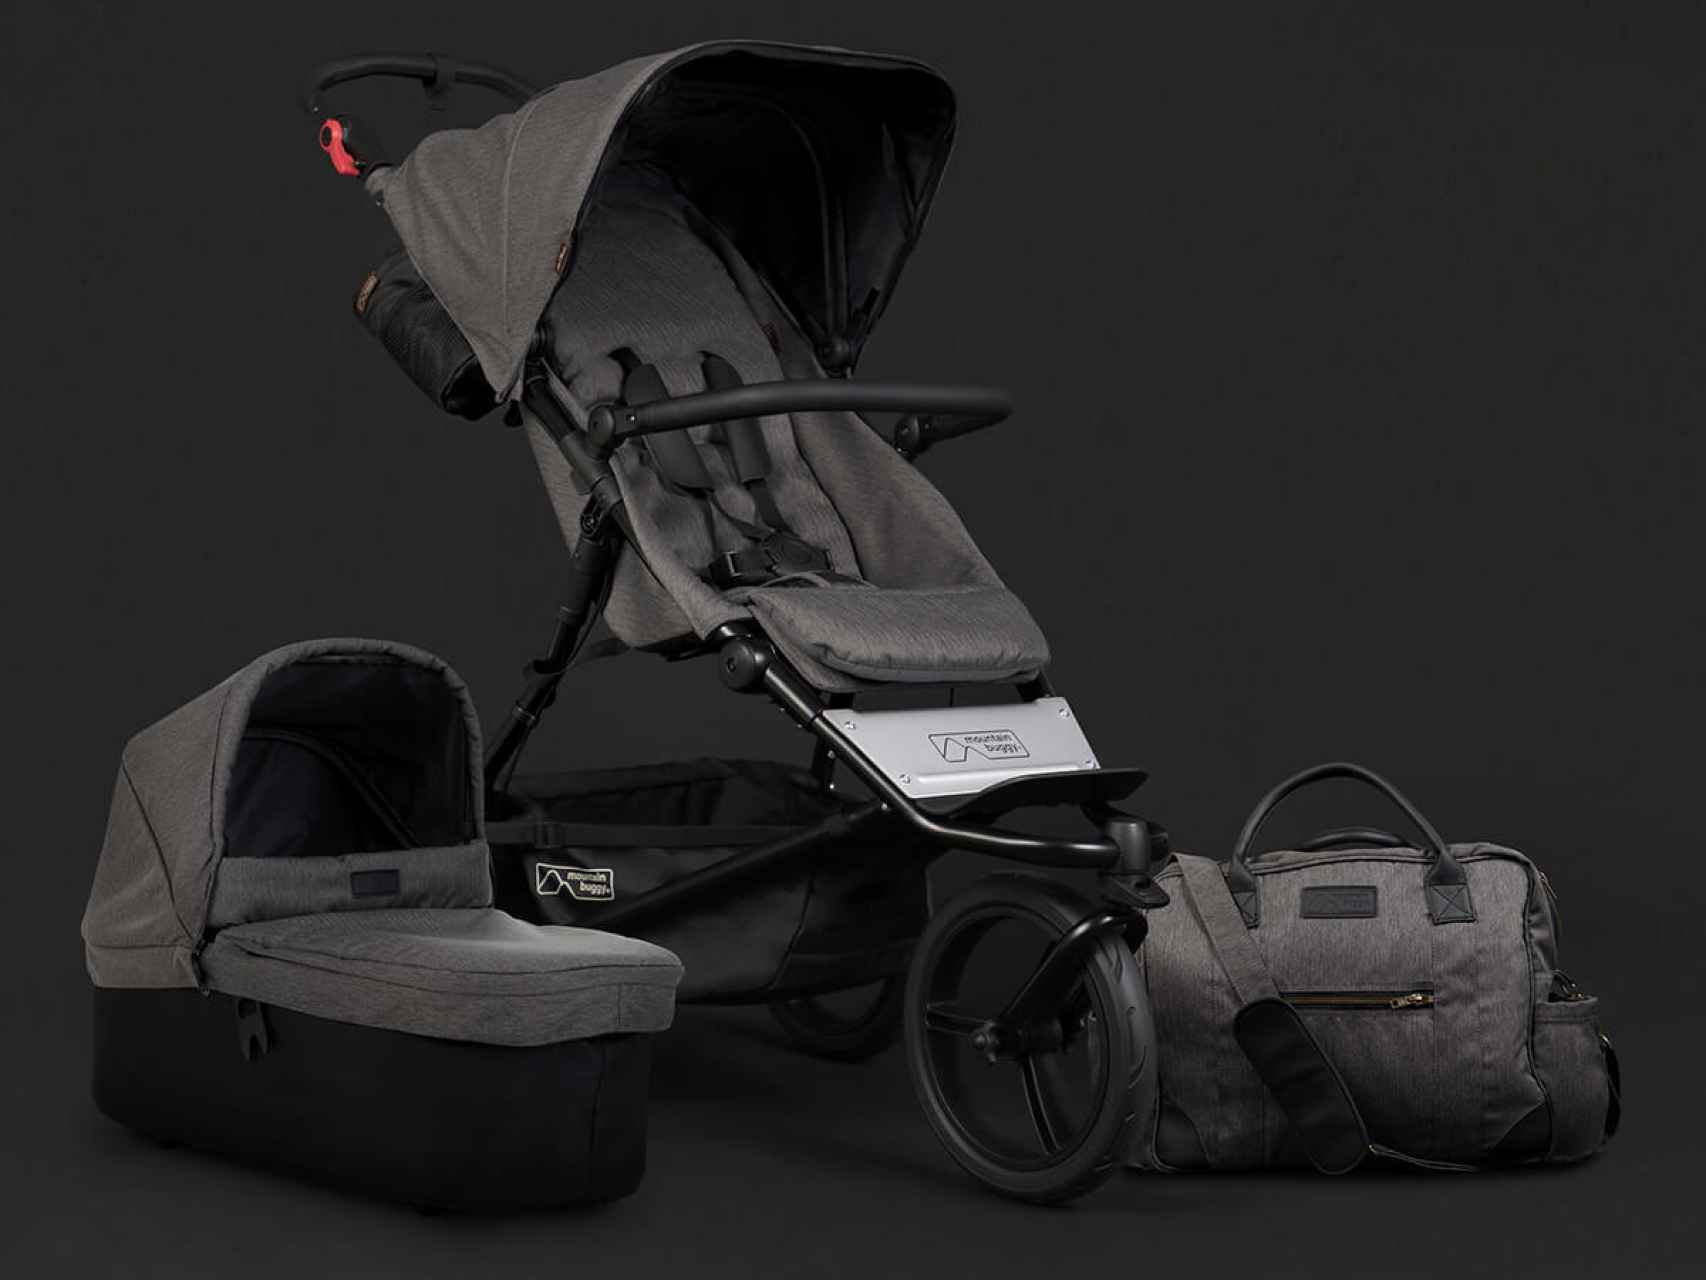 El nuevo carrito de bebé de Toñi Moreno, el Urban Jungle colección luxury.